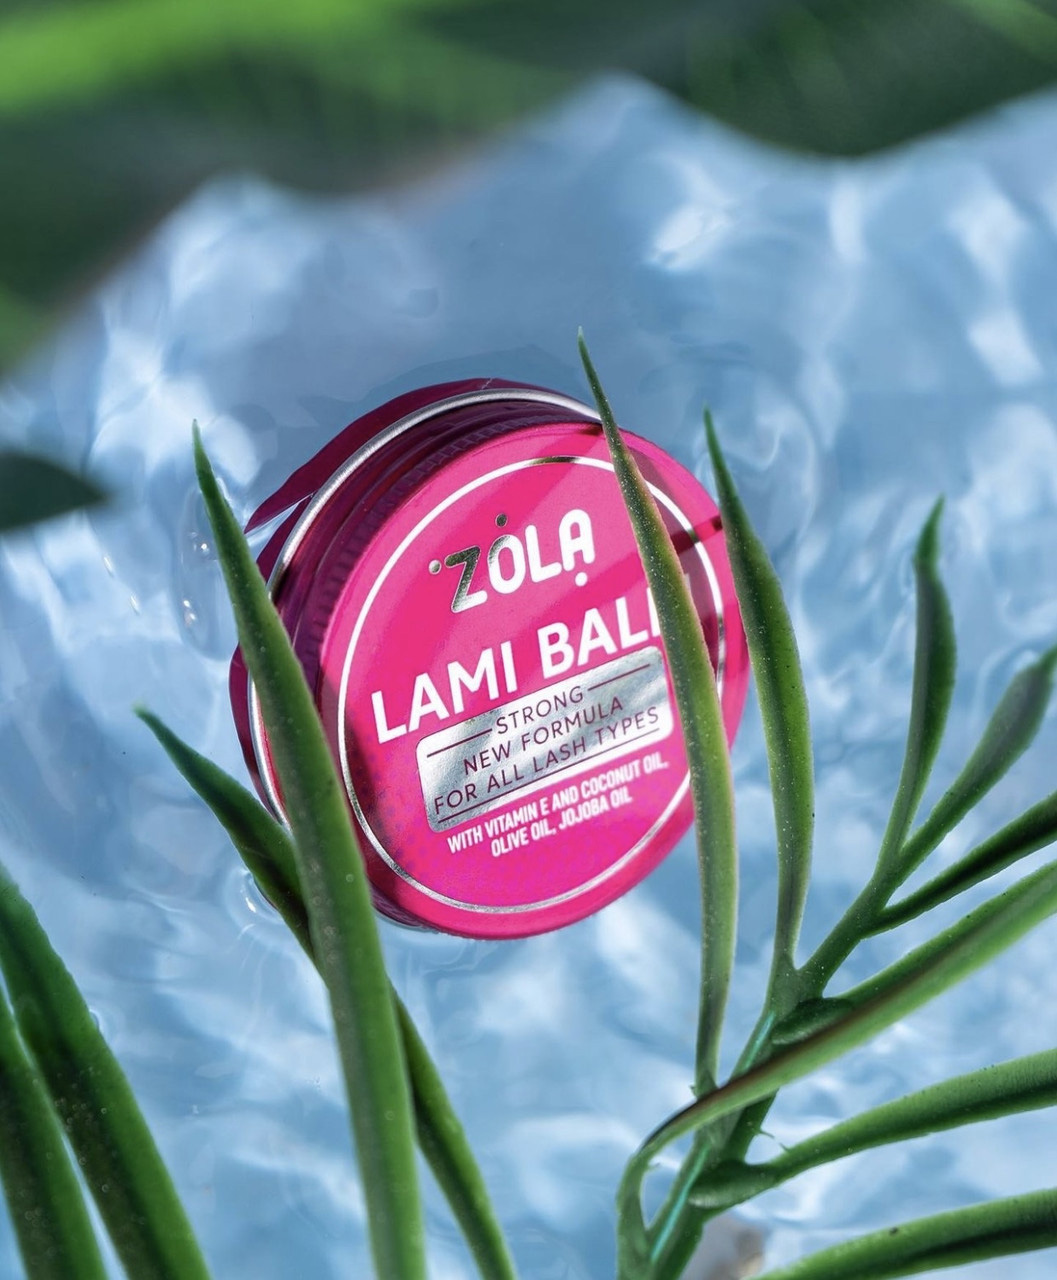 Клей для ламінування ZOLA Lami Balm Pink 30 г